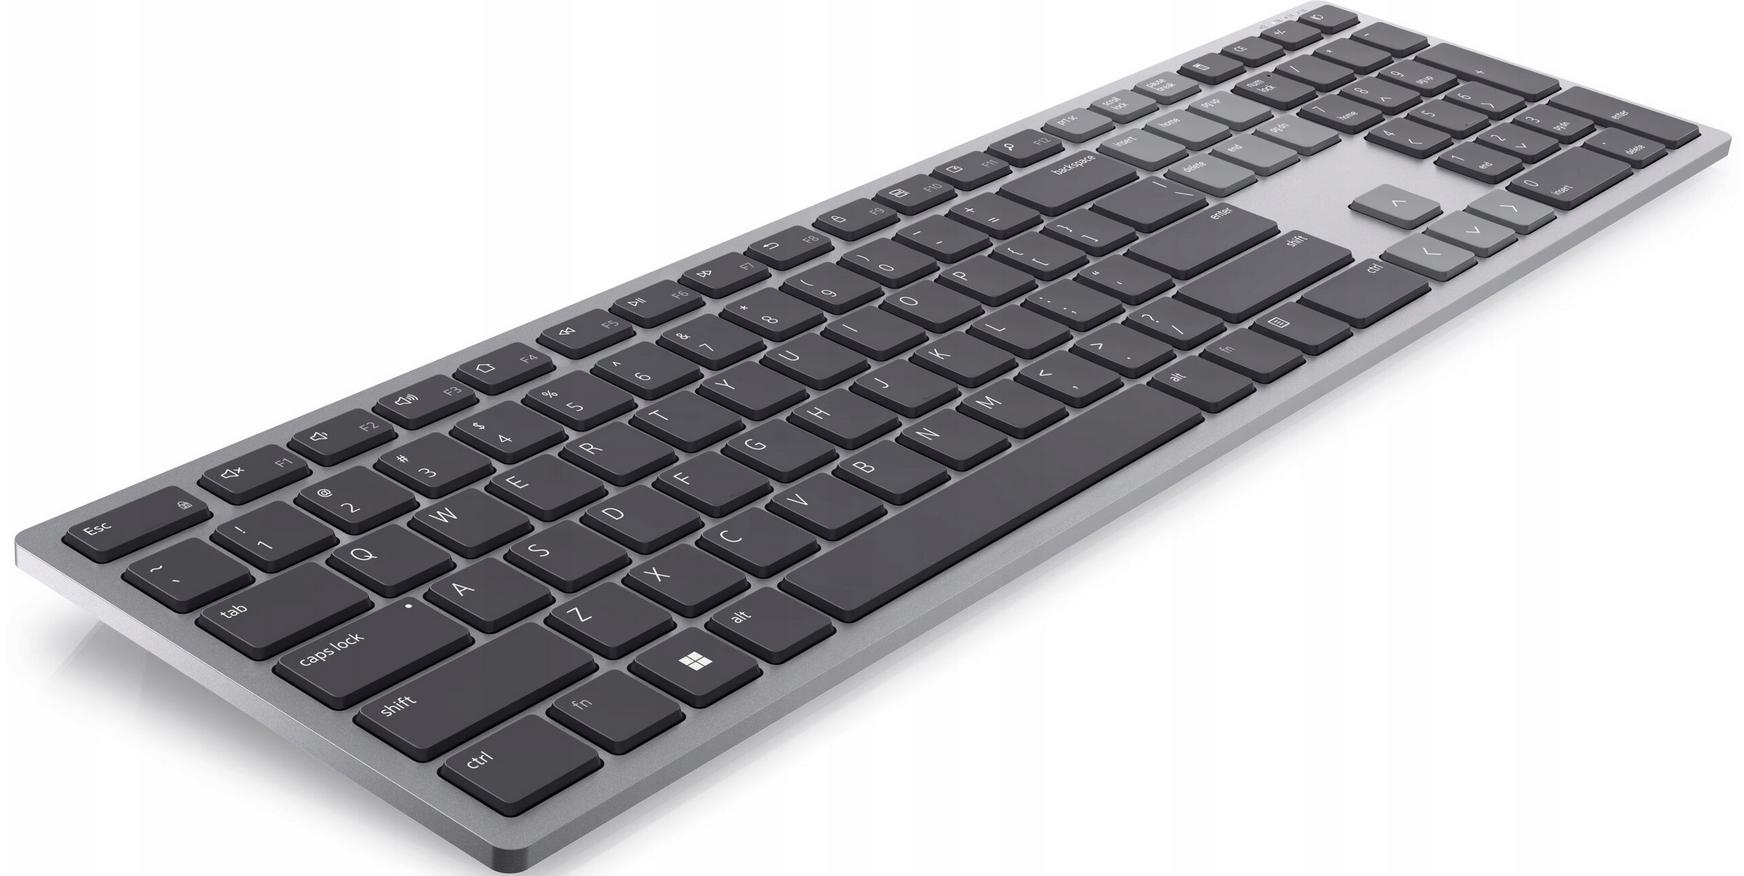 Klawiatura Dell KB700 Multi-Device Wireless Keyboard - trwałość, wytrzymałość i bezpieczeństwo